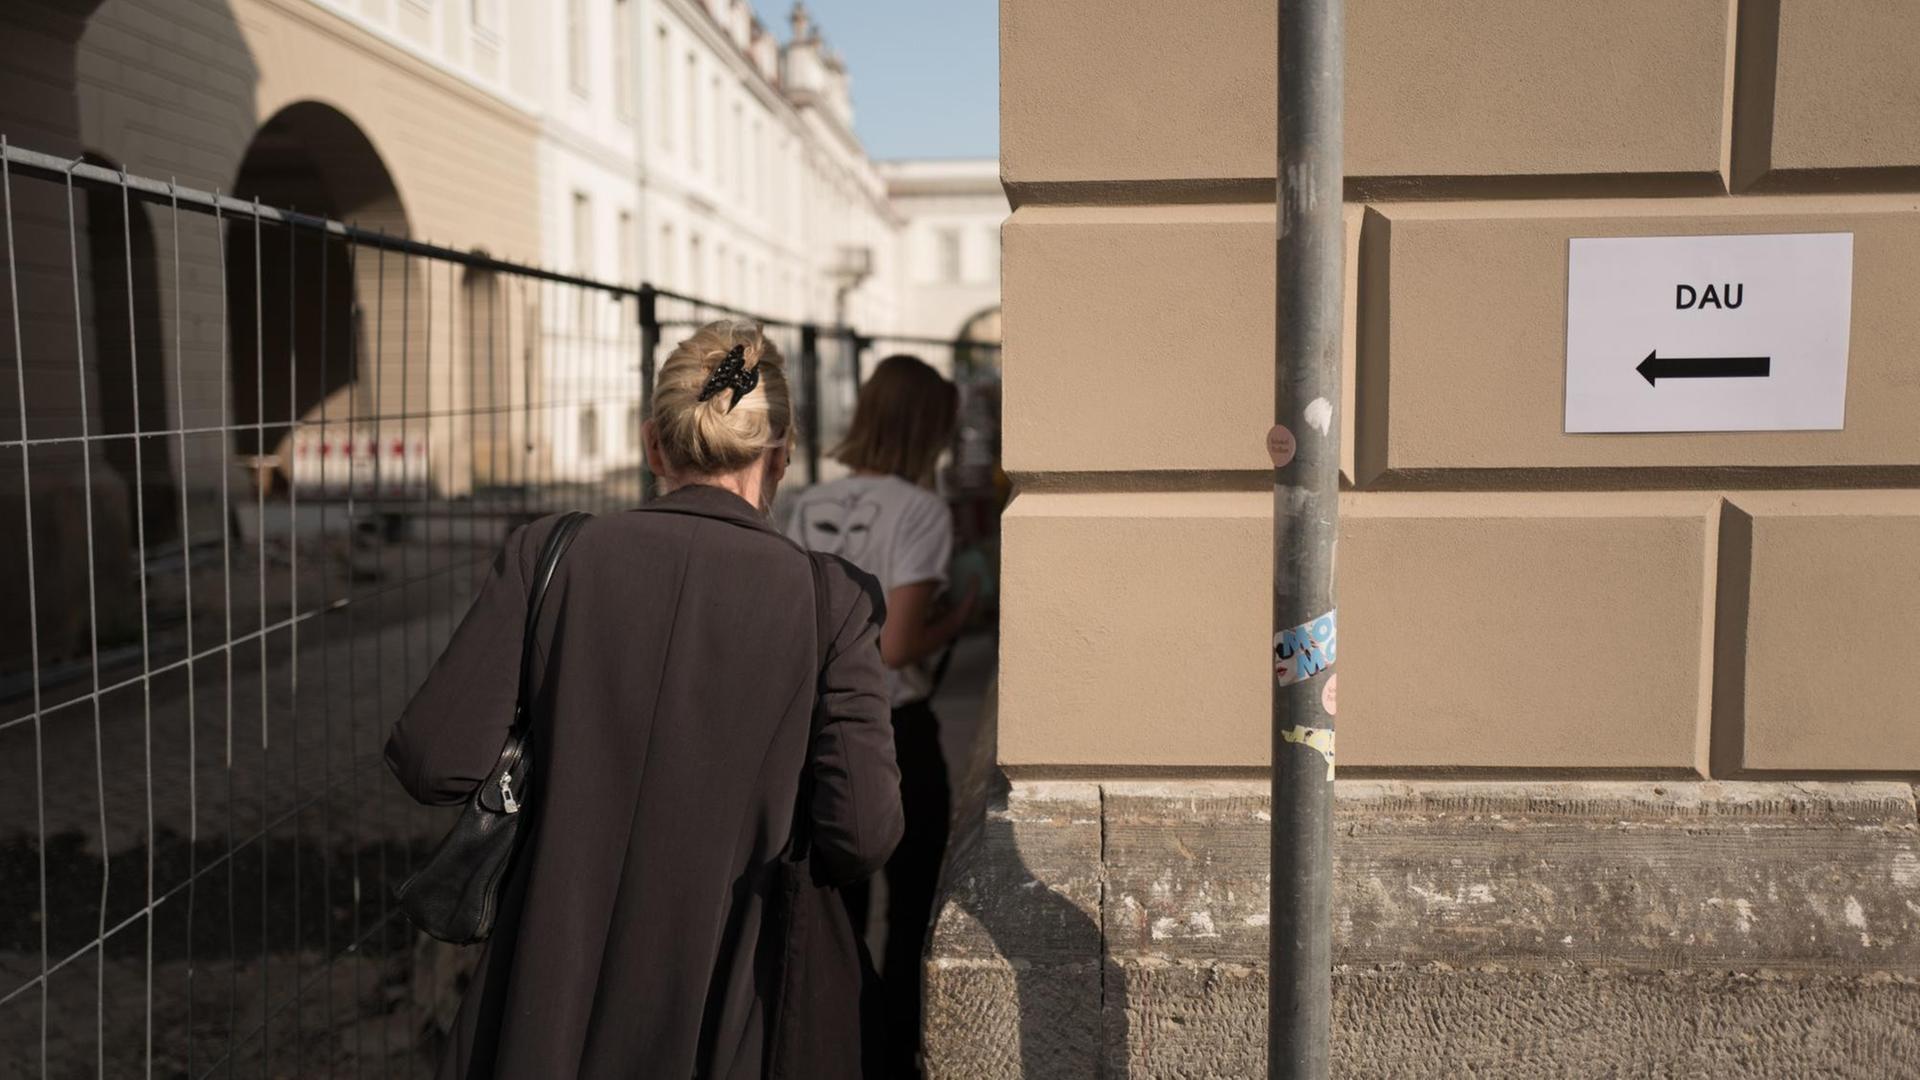 28.08.2018, Berlin: Ein Wegweiser mit der Aufschrift "Dau" führt in den Schinkel Pavillon, wo im Rahmen einer Pressekonferenz das Mauer- und Kunstprojekts "DAU Freiheit" vorgestellt wird.